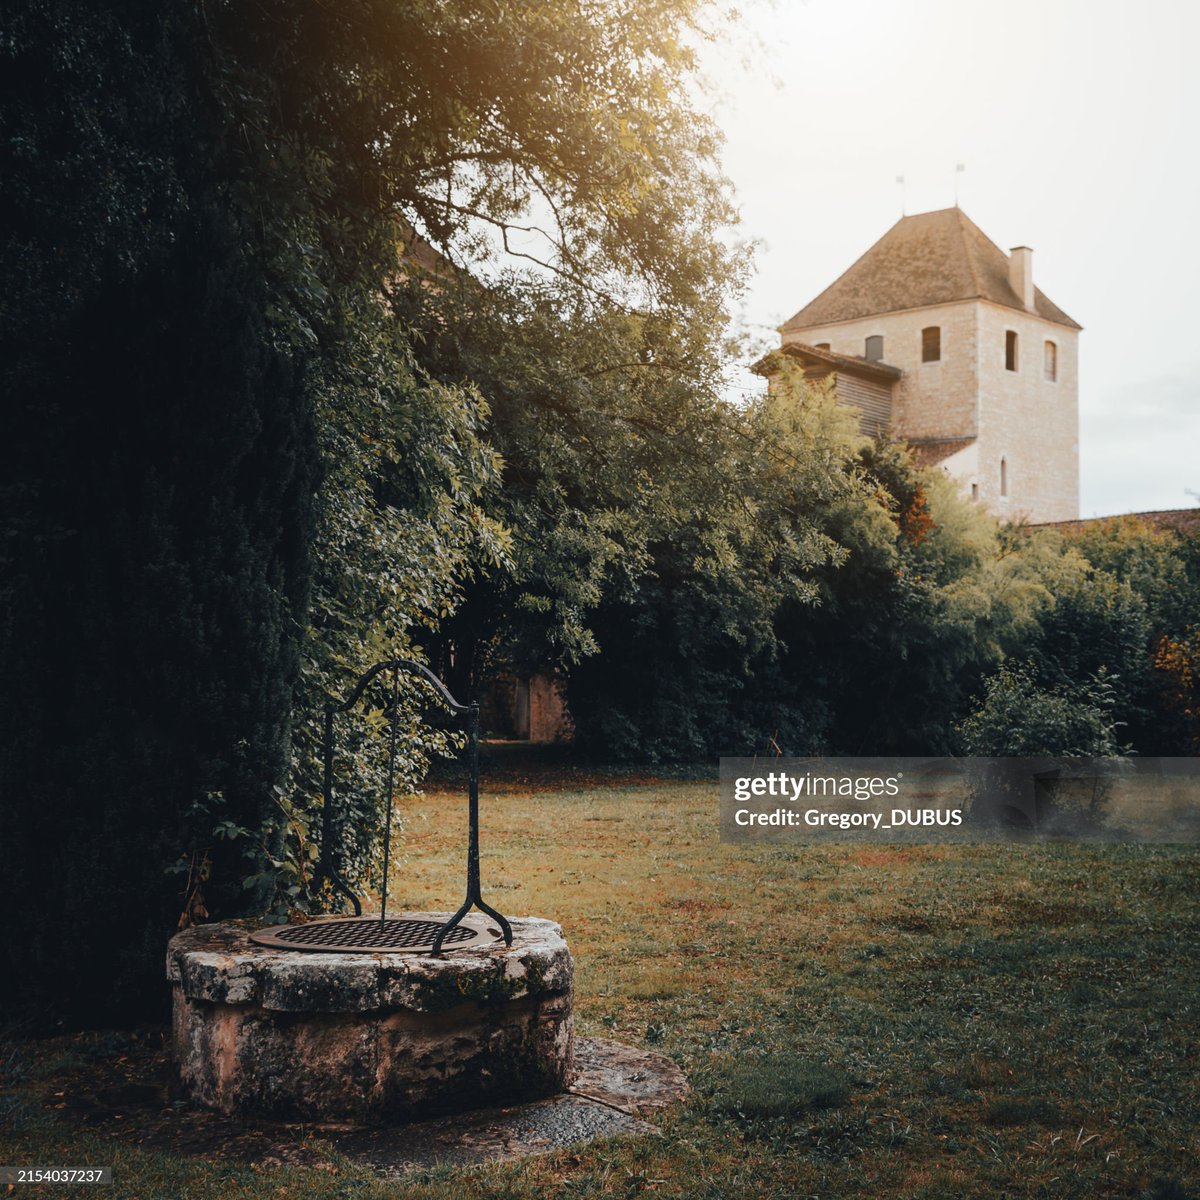 Les magnifiques jardins de l'Abbaye d'Ambronay, en automne et au coucher du soleil, avec la tour des Archives en arrière plan...
A retrouver sur mon compte Instagram ; instagram.com/gregory_dubus/

📷© @Gregory_DUBUS 

#ambronay @iStock @GettyImages_fr @GettyImages @GettyCreativity